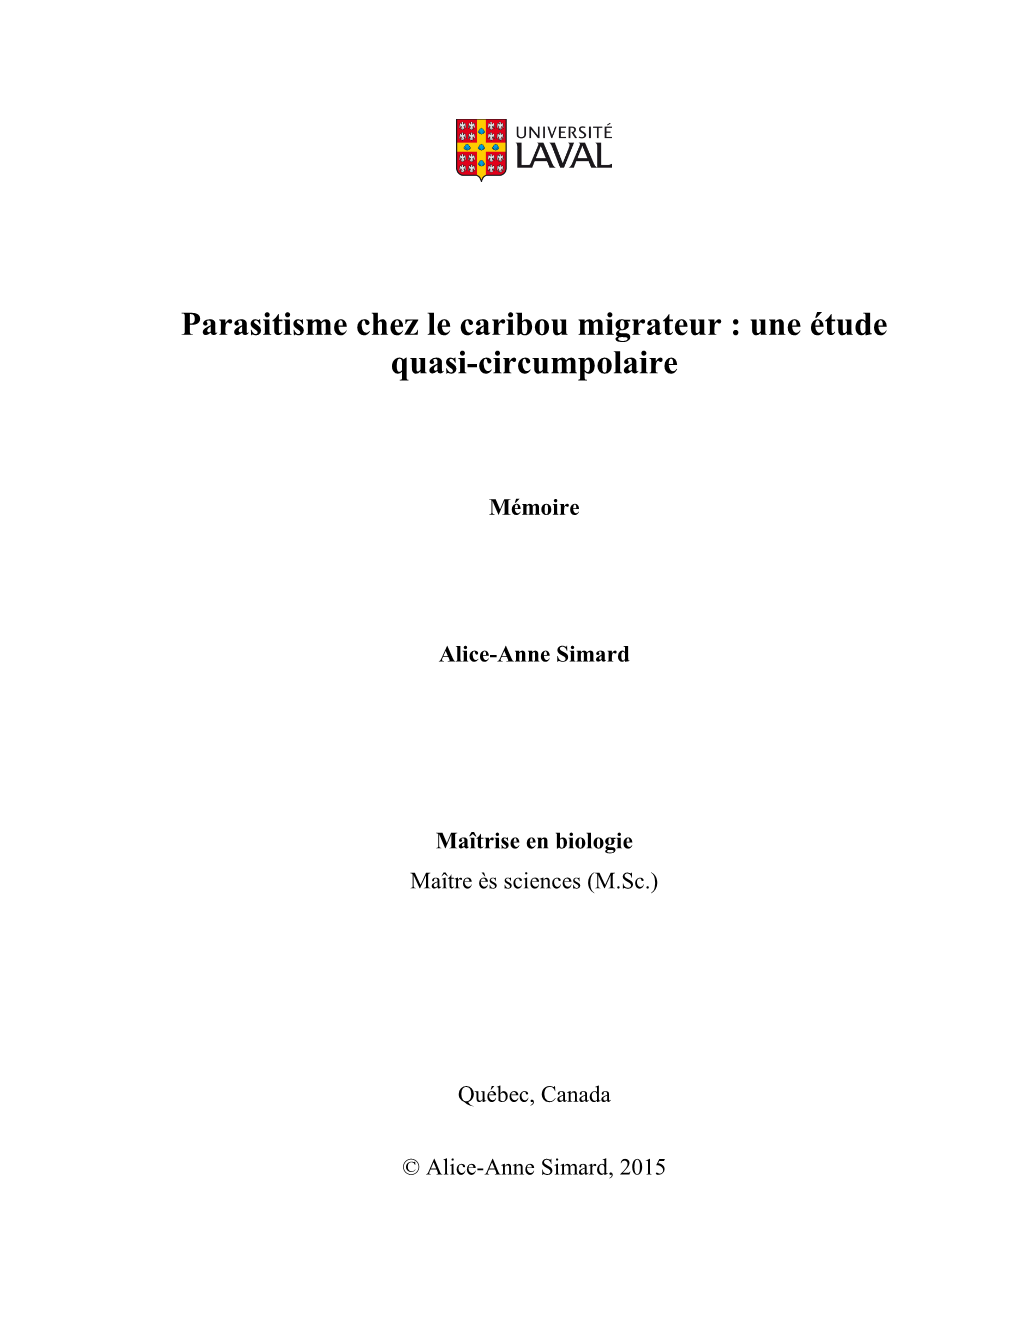 Parasitisme Chez Le Caribou Migrateur : Une Étude Quasi-Circumpolaire